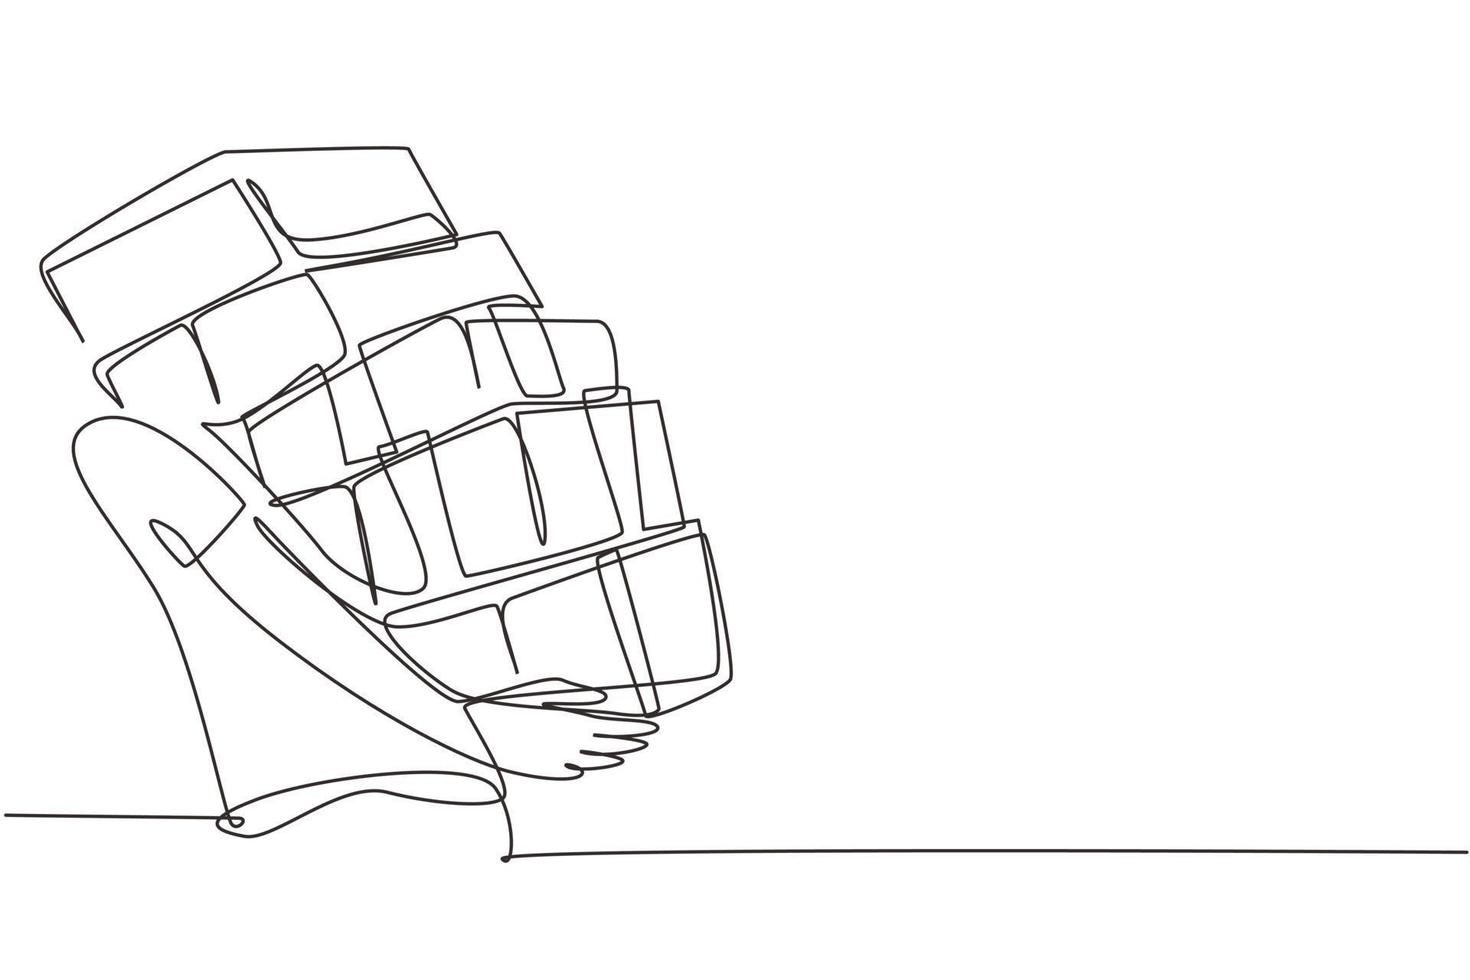 dibujo continuo de una línea retrato de un niño que lleva una pila de cajas de regalos envueltos sobre fondo blanco. joven sosteniendo una gran pila de regalos de año nuevo. ilustración gráfica de vector de diseño de dibujo de una sola línea